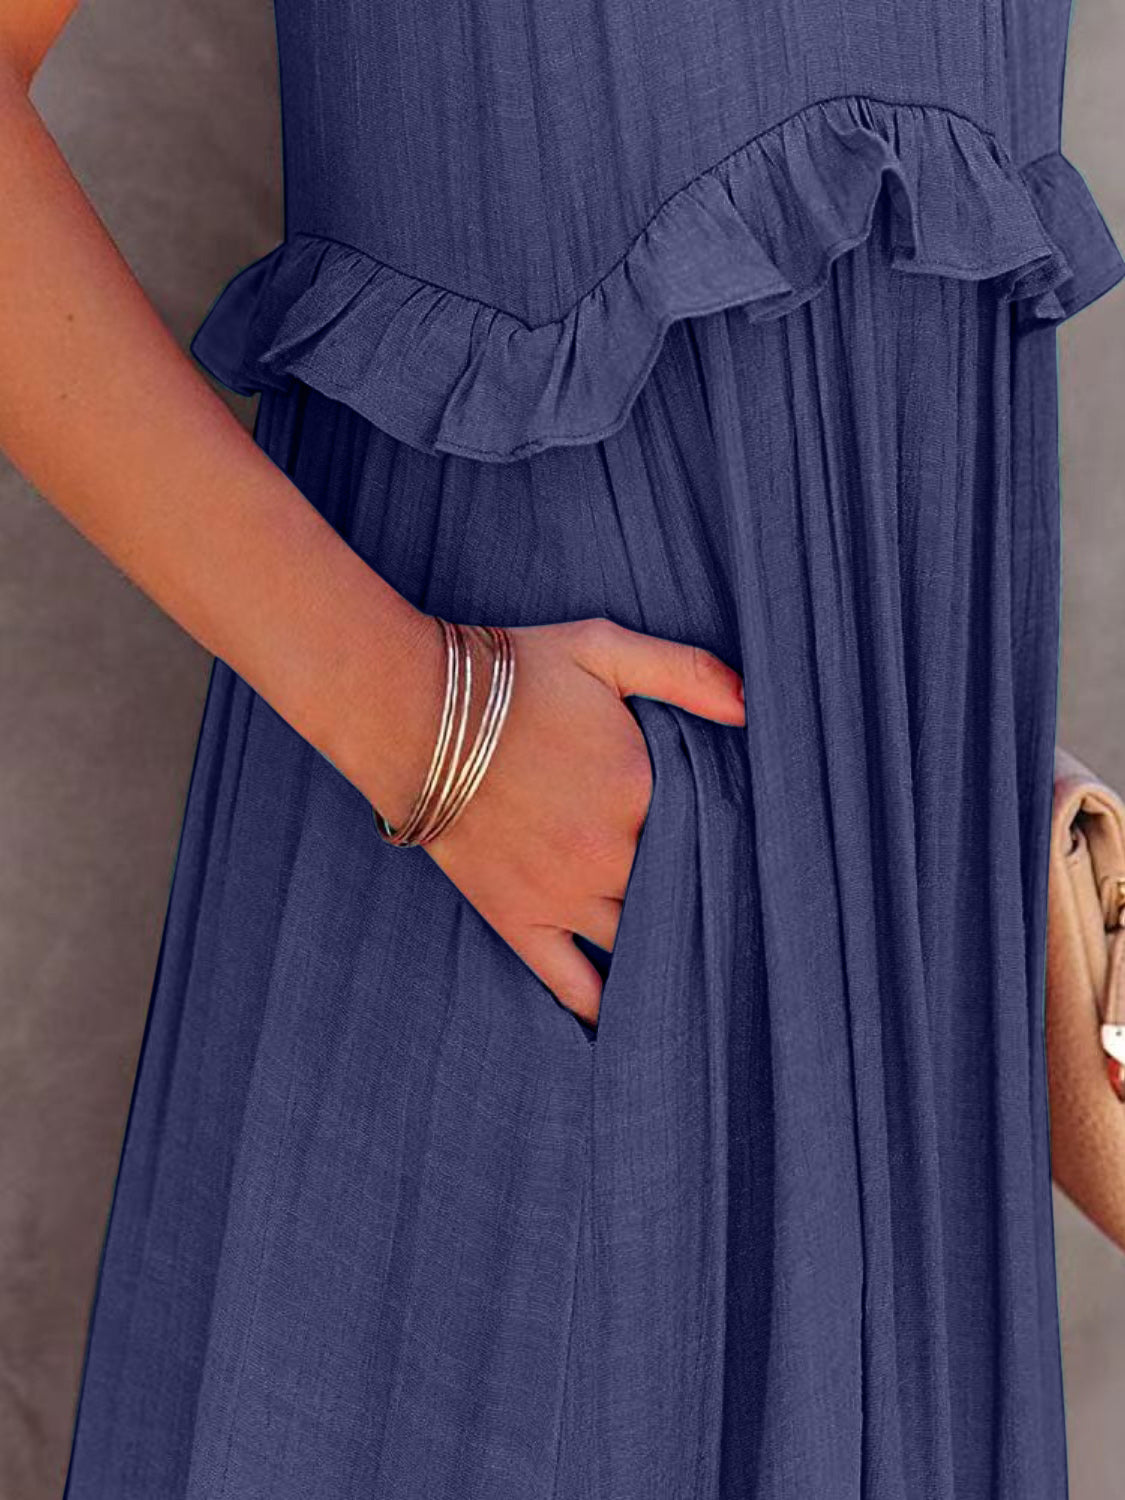 Ruffled Sleeveless Tiered Maxi Dress with Pockets - Tigbuls Variety Fashion